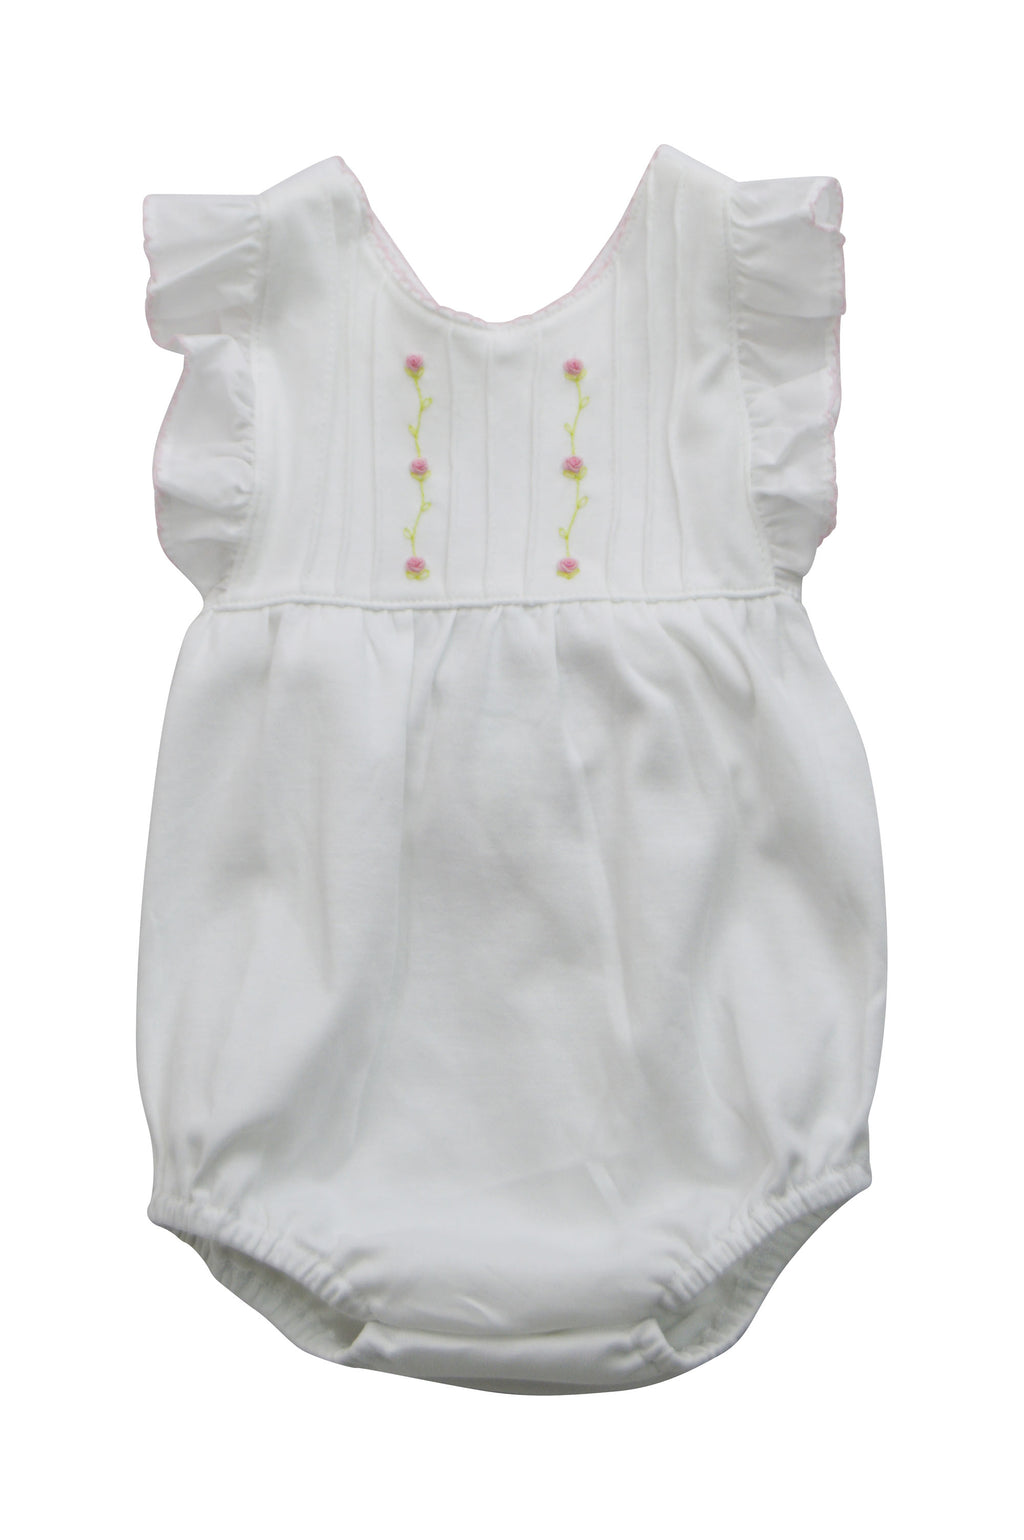 Baby Girl's White Pink Flowers Romper - Little Threads Inc. Children's Clothing